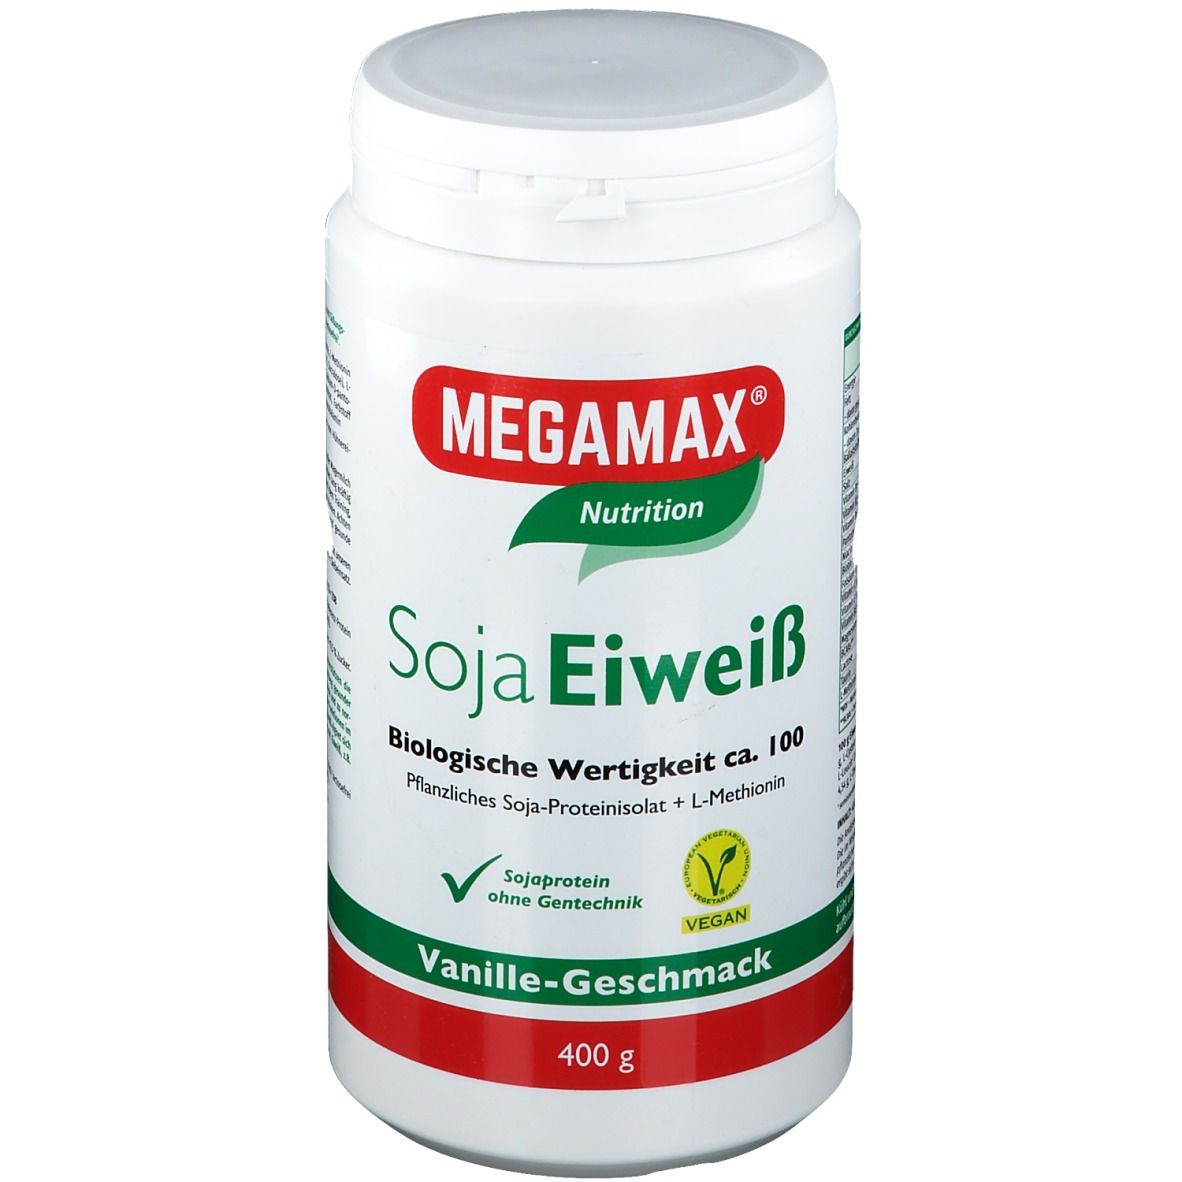 MEGAMAX® Nutrition Soja Eiweiß Vanille-Geschmack